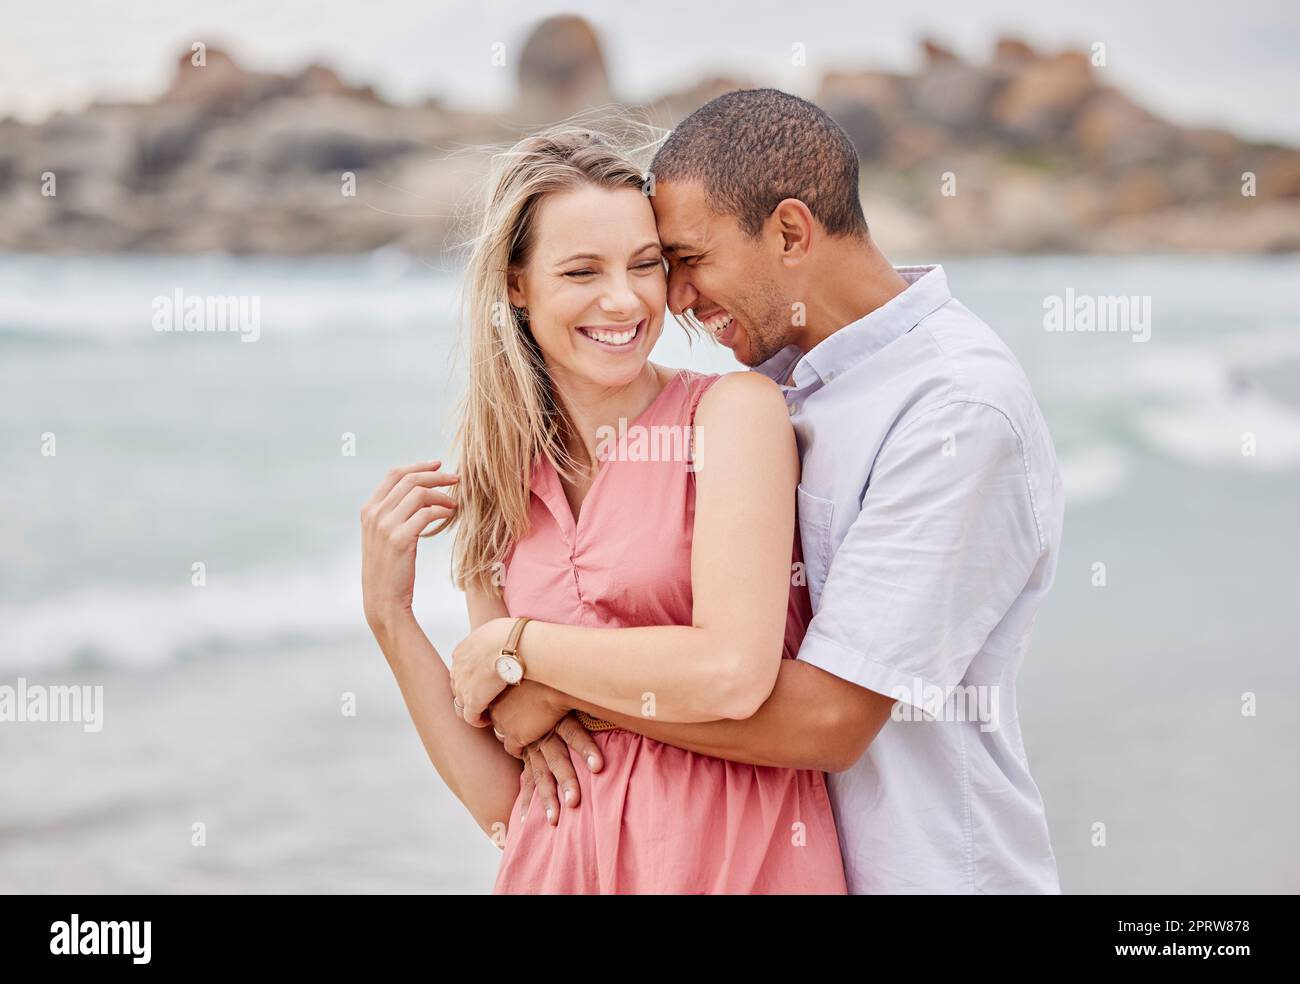 Voyage, plage et couple hug, heureux et rire tout en se liant à l'extérieur, appréciant la vue de l'océan. Amour, relation et plaisir aquatique avec homme et femme détendus lors d'un voyage en bord de mer à San francisco Banque D'Images